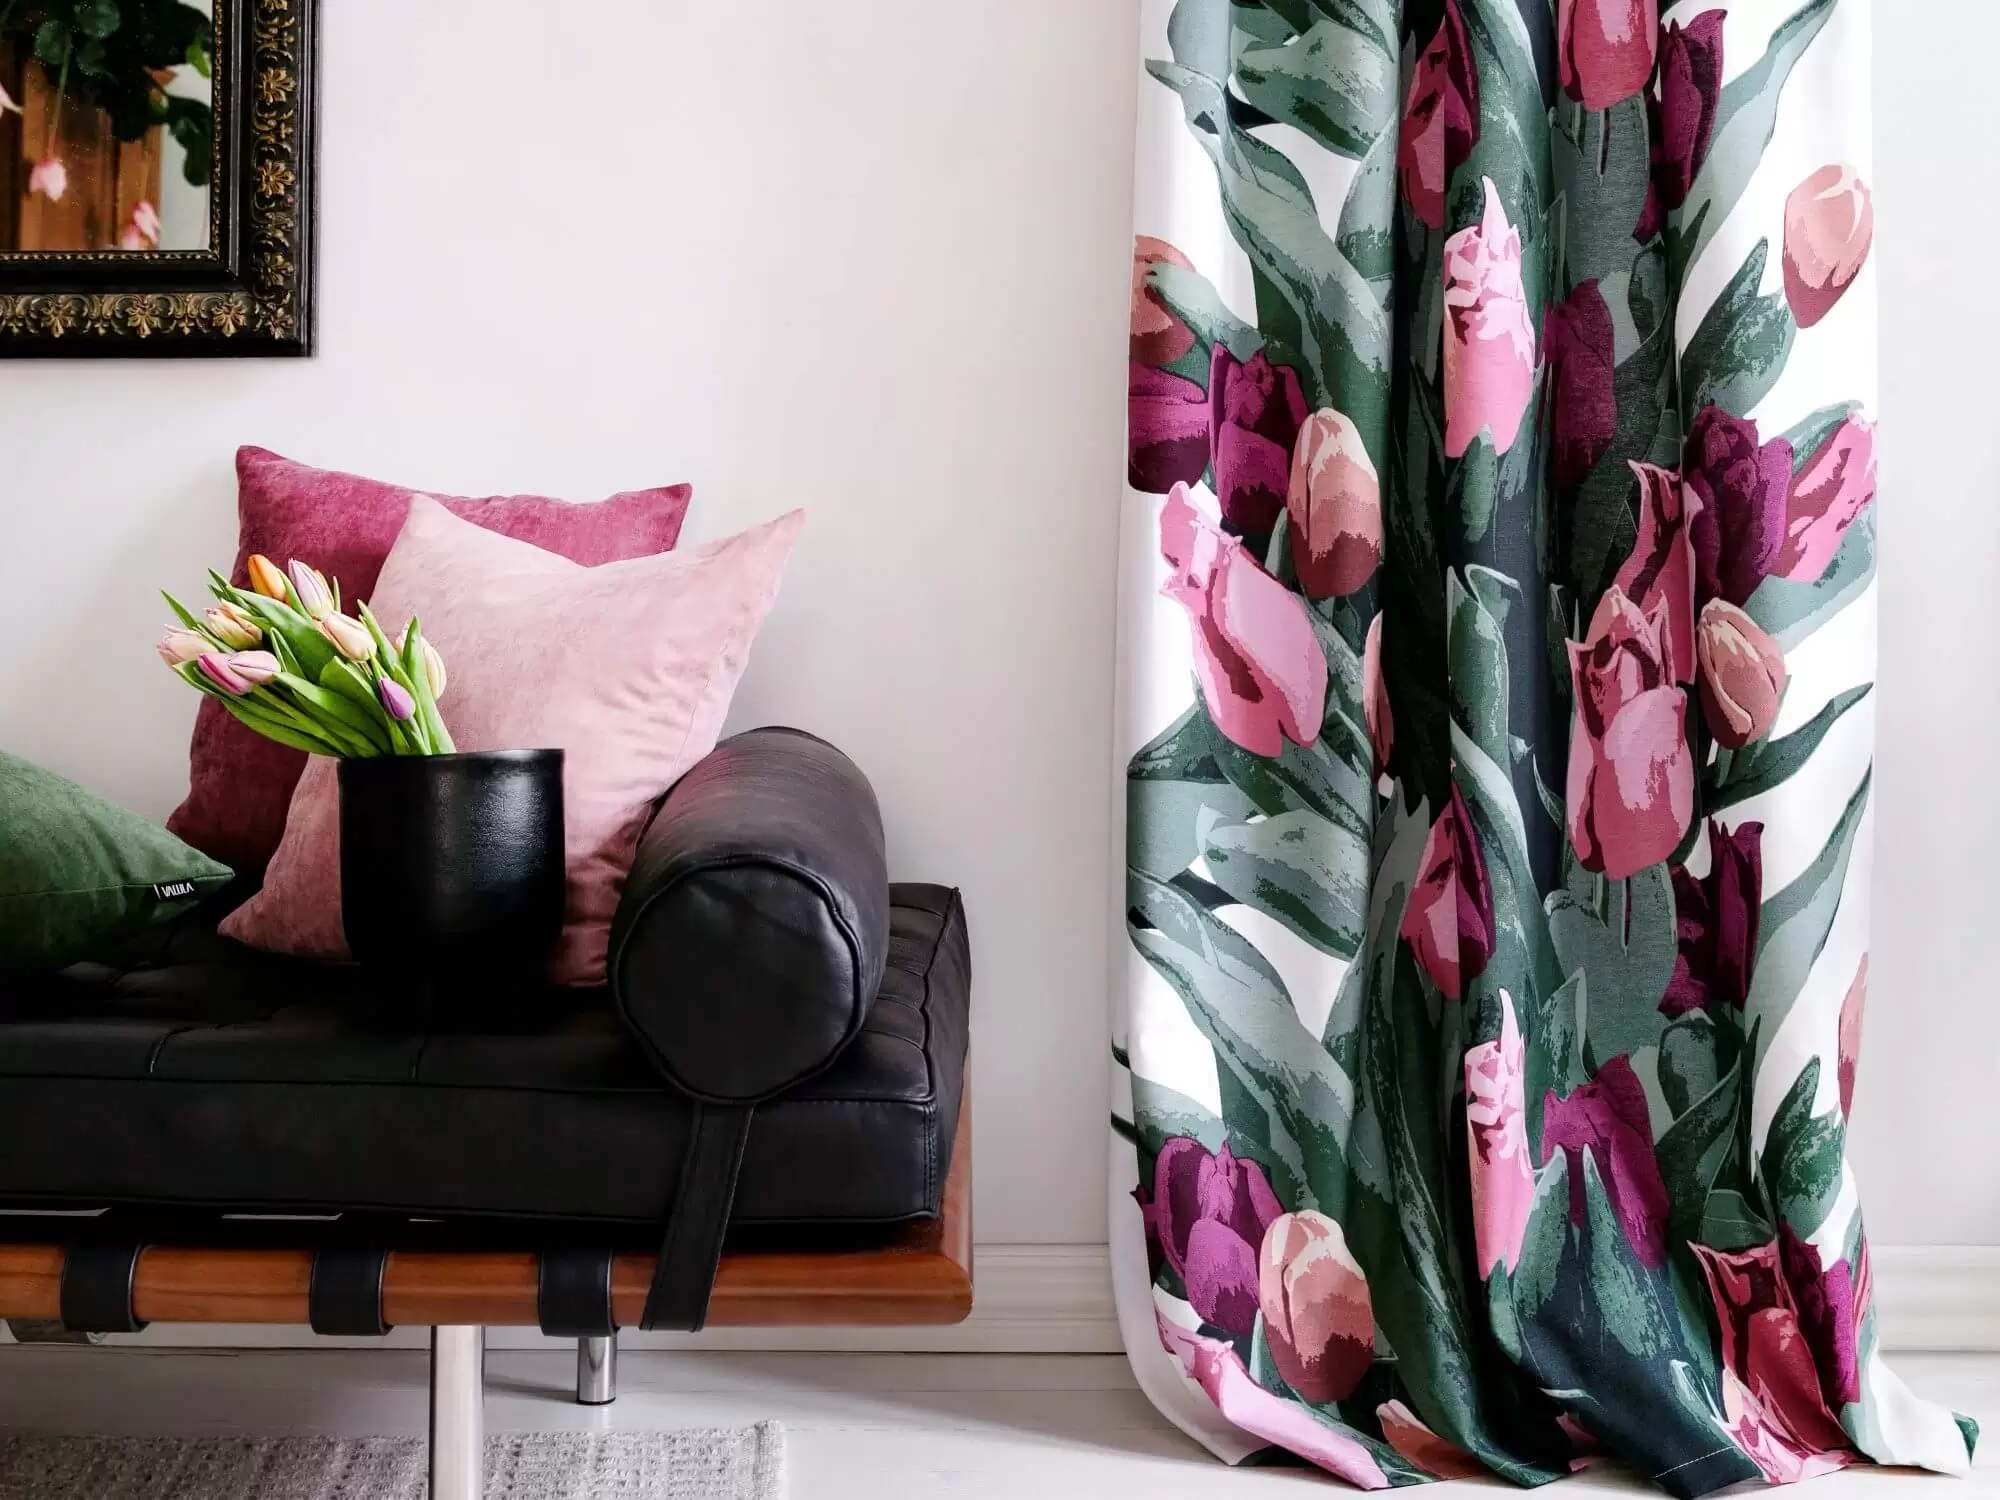 Zasłony do salonu w kwiaty na tle okna i brązowej sofy w skandynawskim salonie. Tulipany w kolorach różowych, amarantowych pięknie prezentują się na tle zielonych liści.